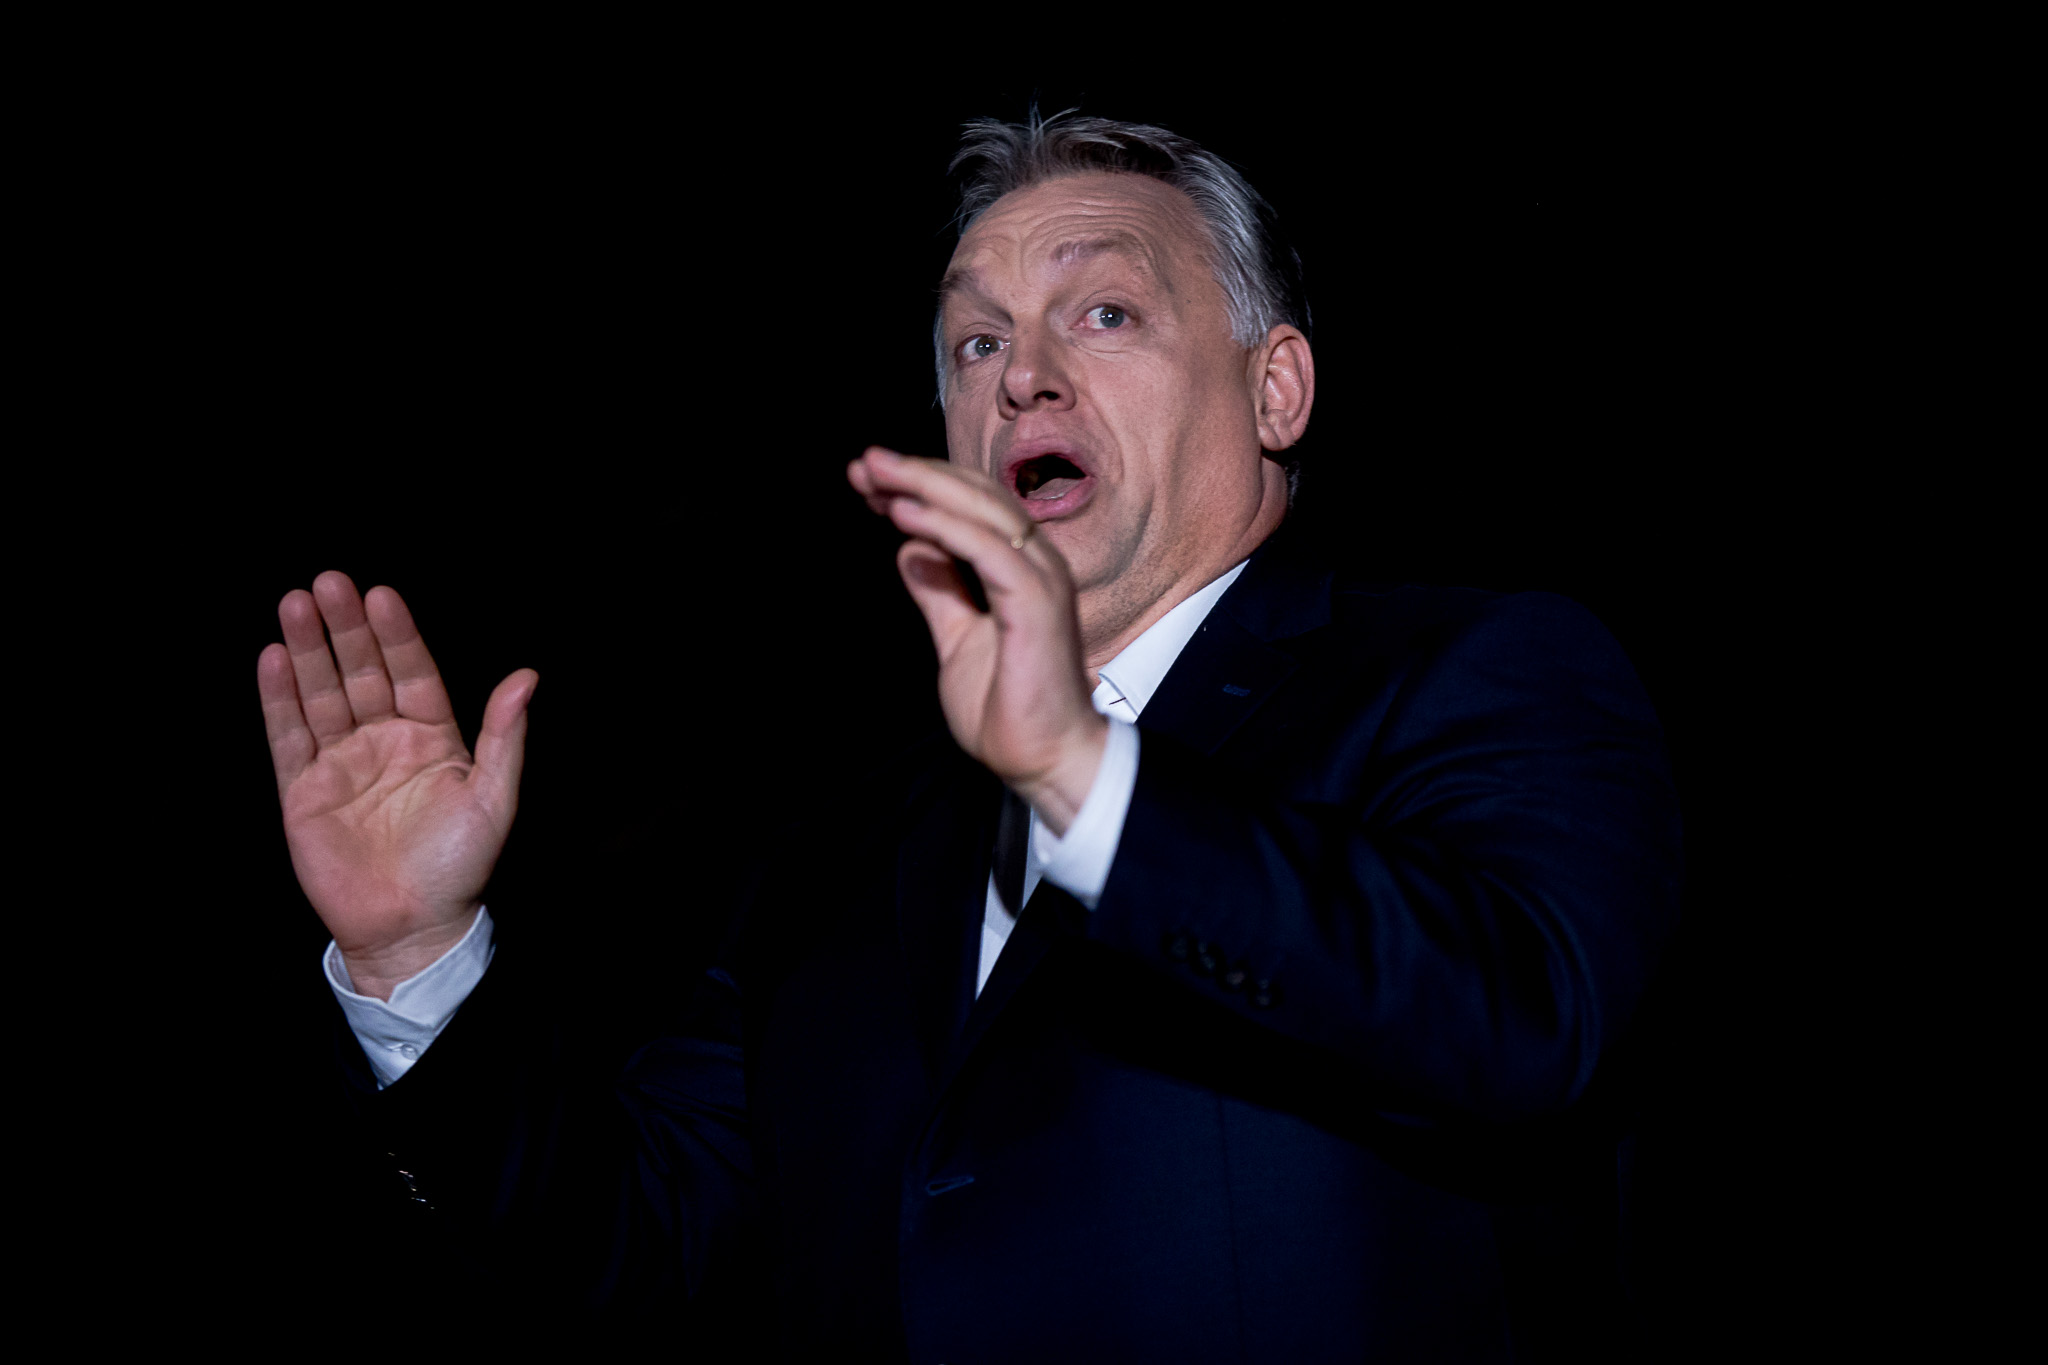 Sajtótájékoztatót a vesztesek tartanak - mondta Rogán, és elhúzta Orbánt az újságírók elől